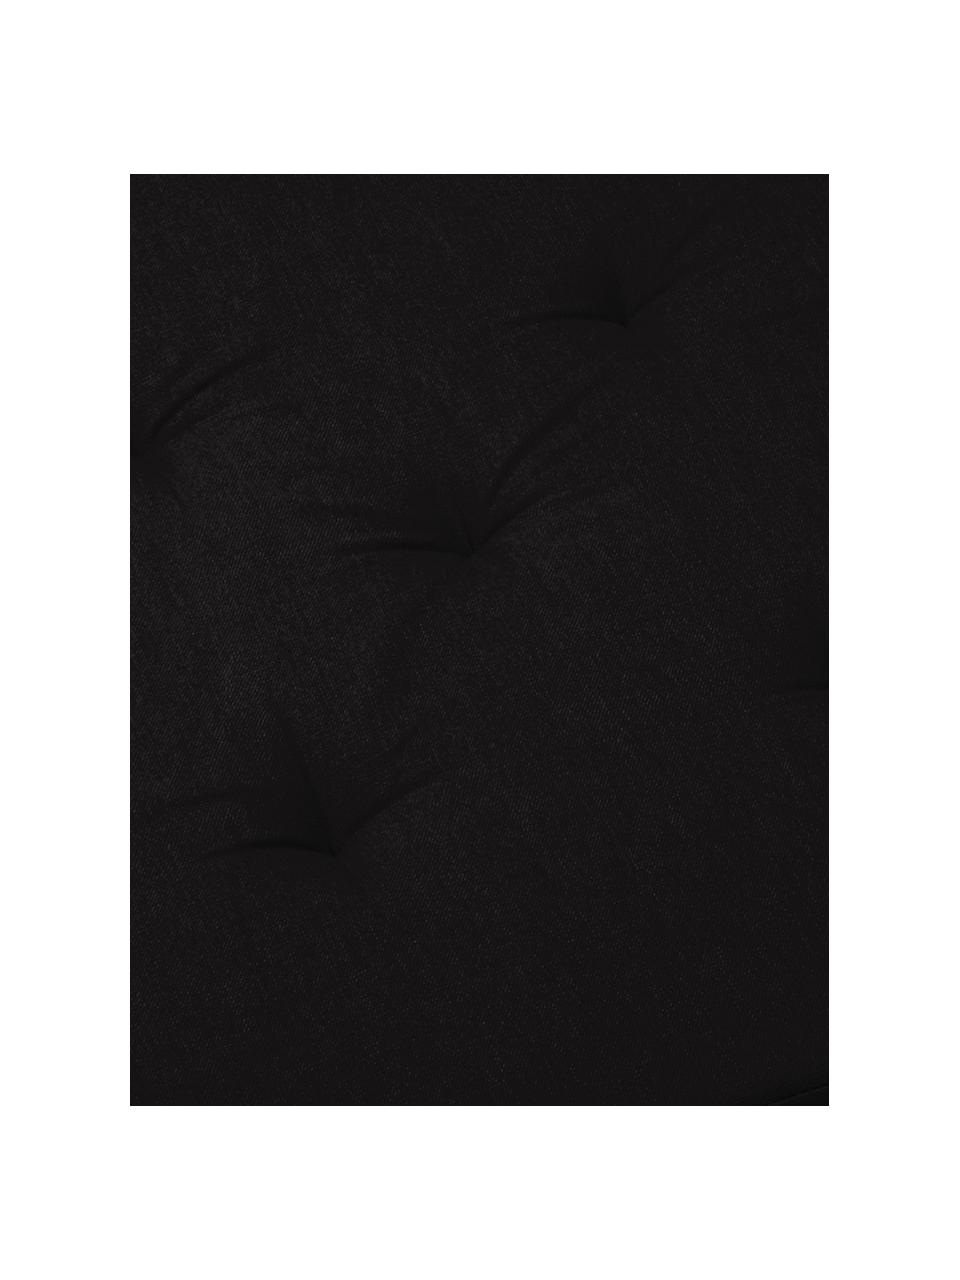 Poduszka na siedzisko Duo, Czarny, beżowy, S 40 x D 40 cm